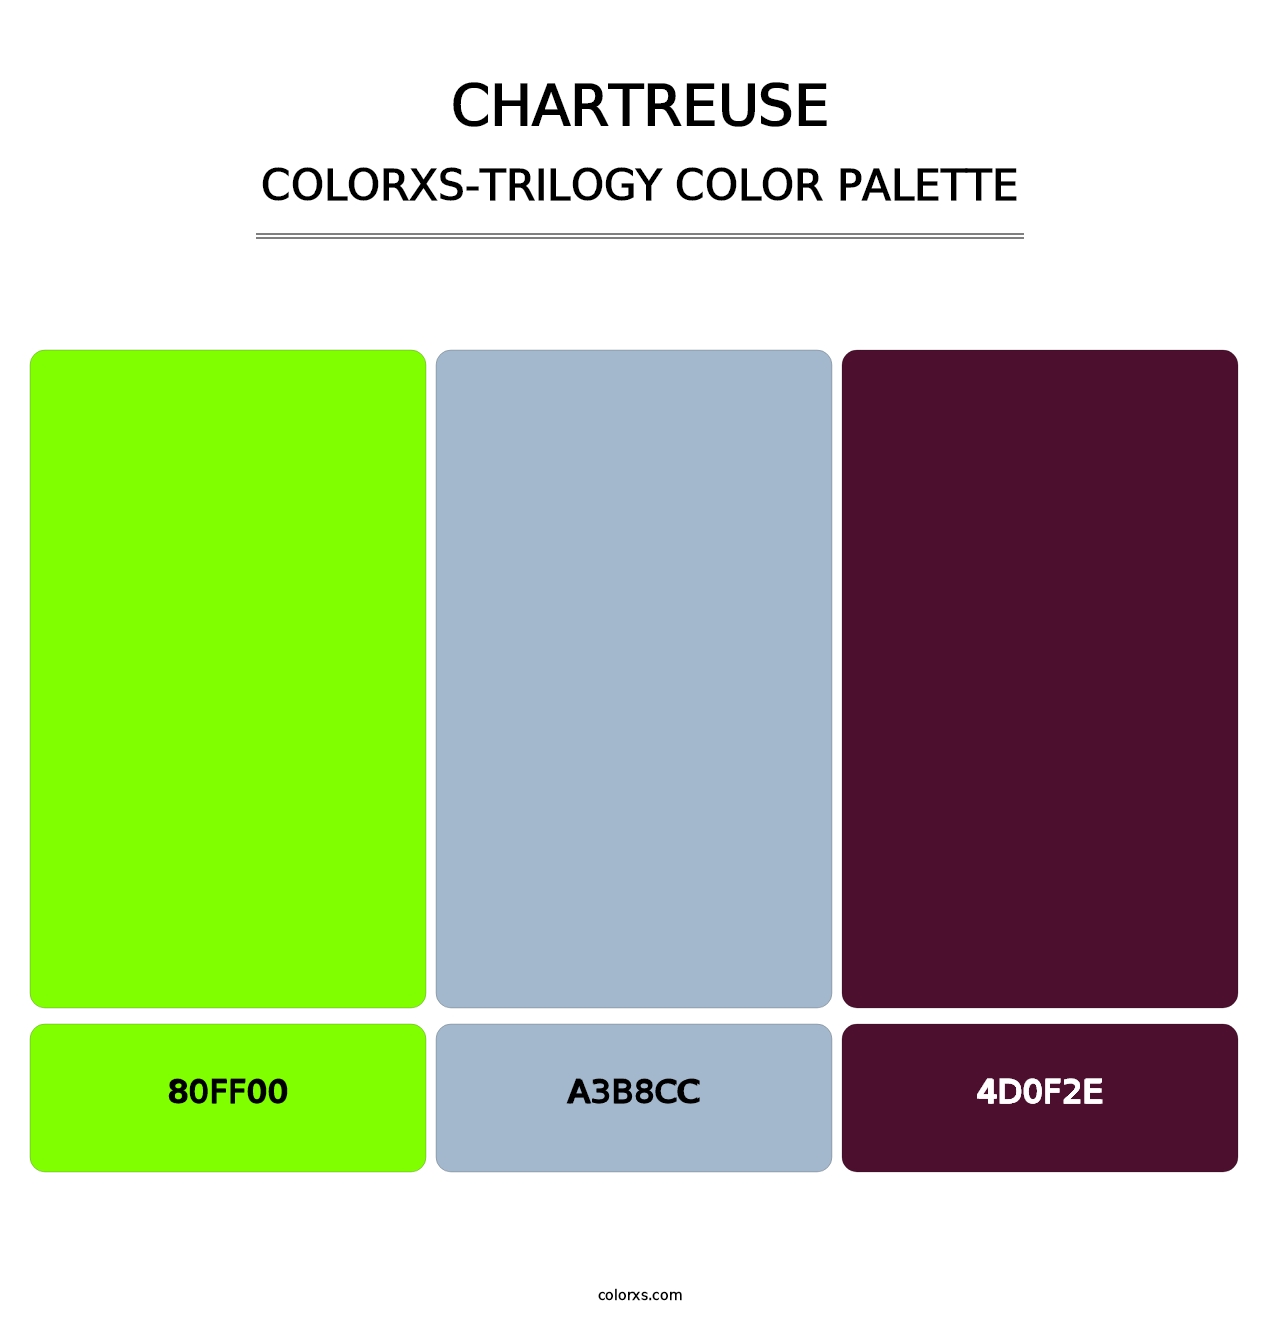 Chartreuse - Colorxs Trilogy Palette